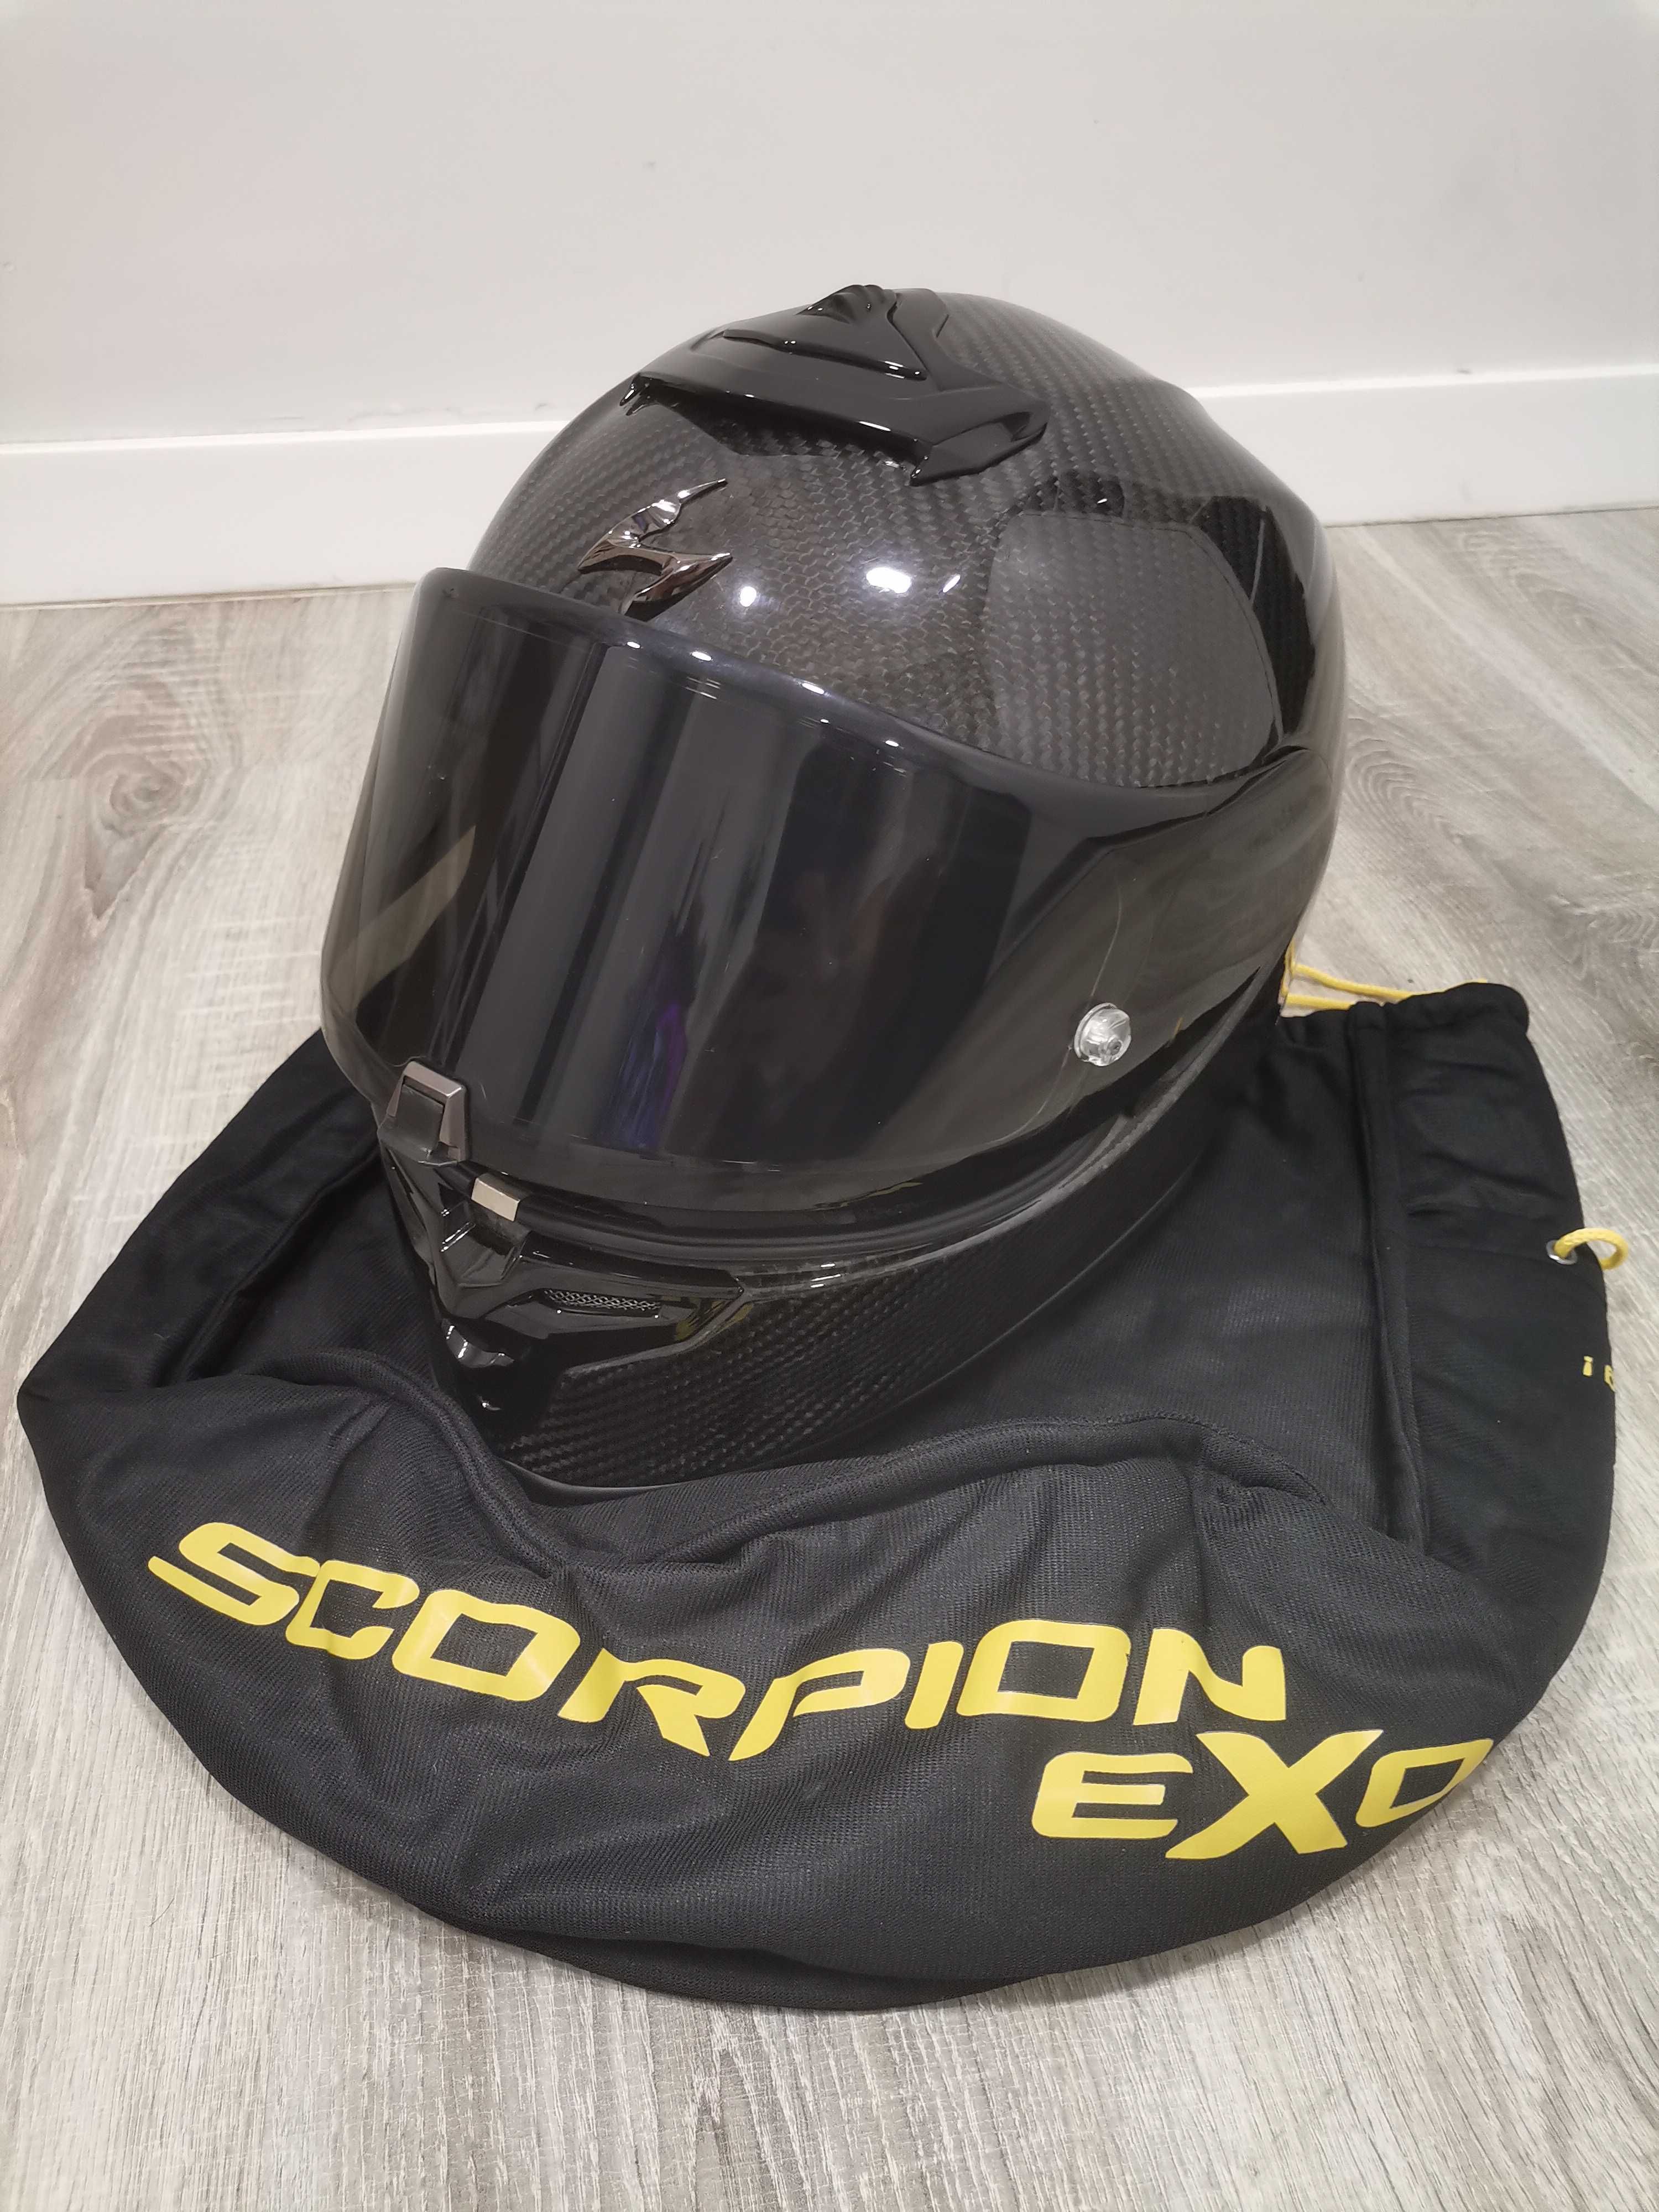 Capacete Scorpion R1